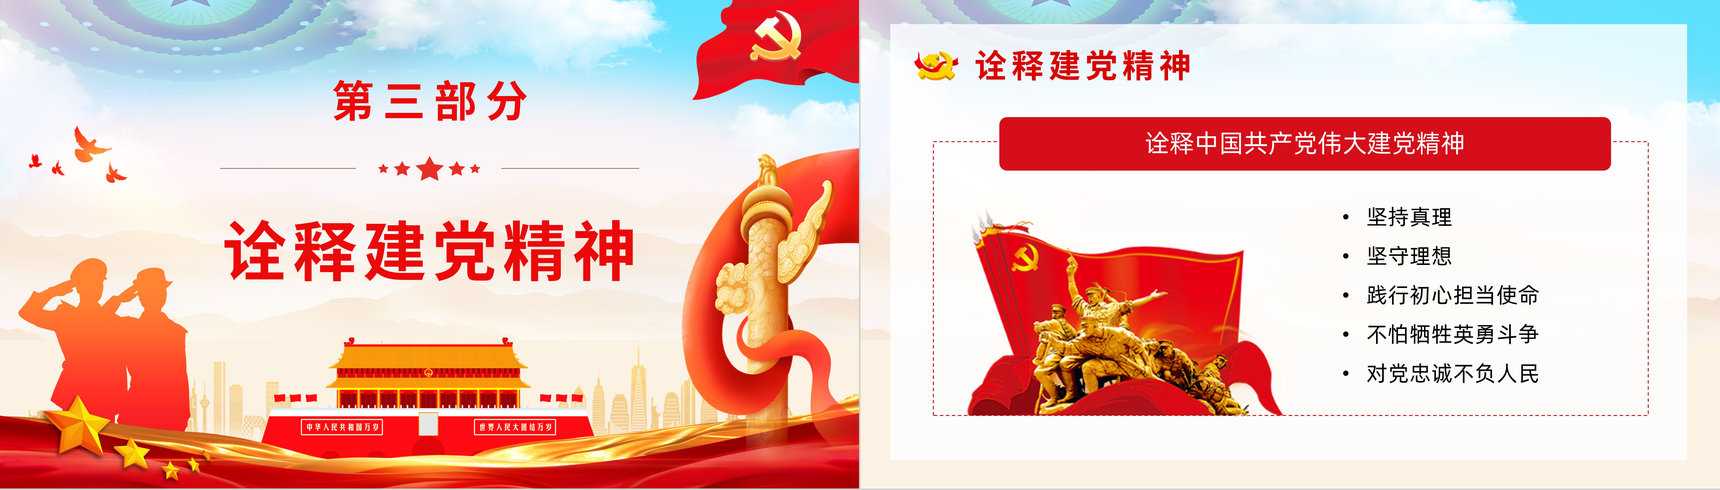 中国共产党百年辉煌宣传建党一百周年大会讲话精神解读学习动员大会PPT模板-8